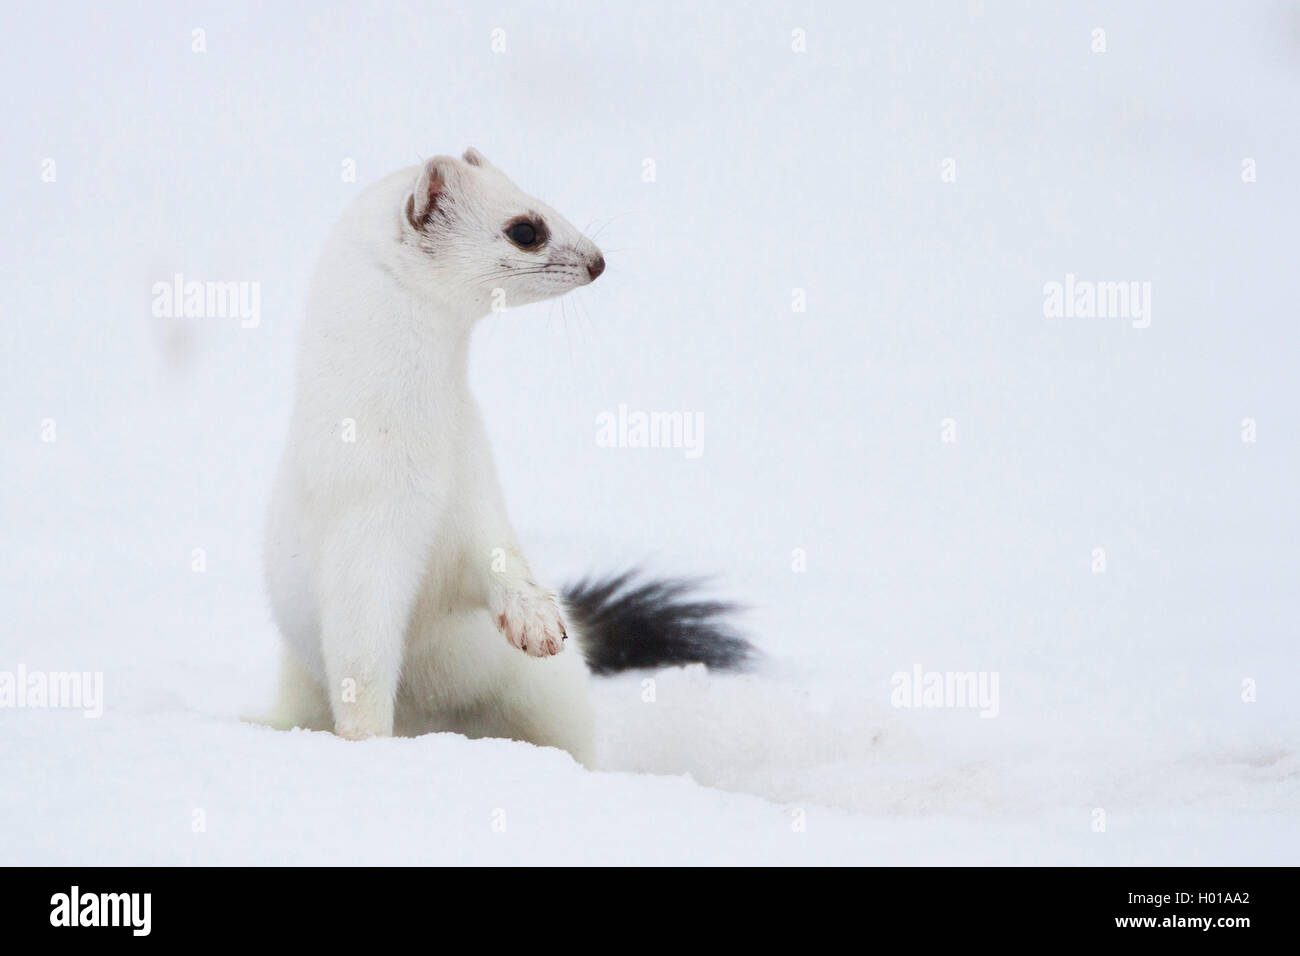 Ermellino, ermellino, corto-tailed donnola (Mustela erminea), in cappotto invernale in un snow-capped prato, Germania Foto Stock